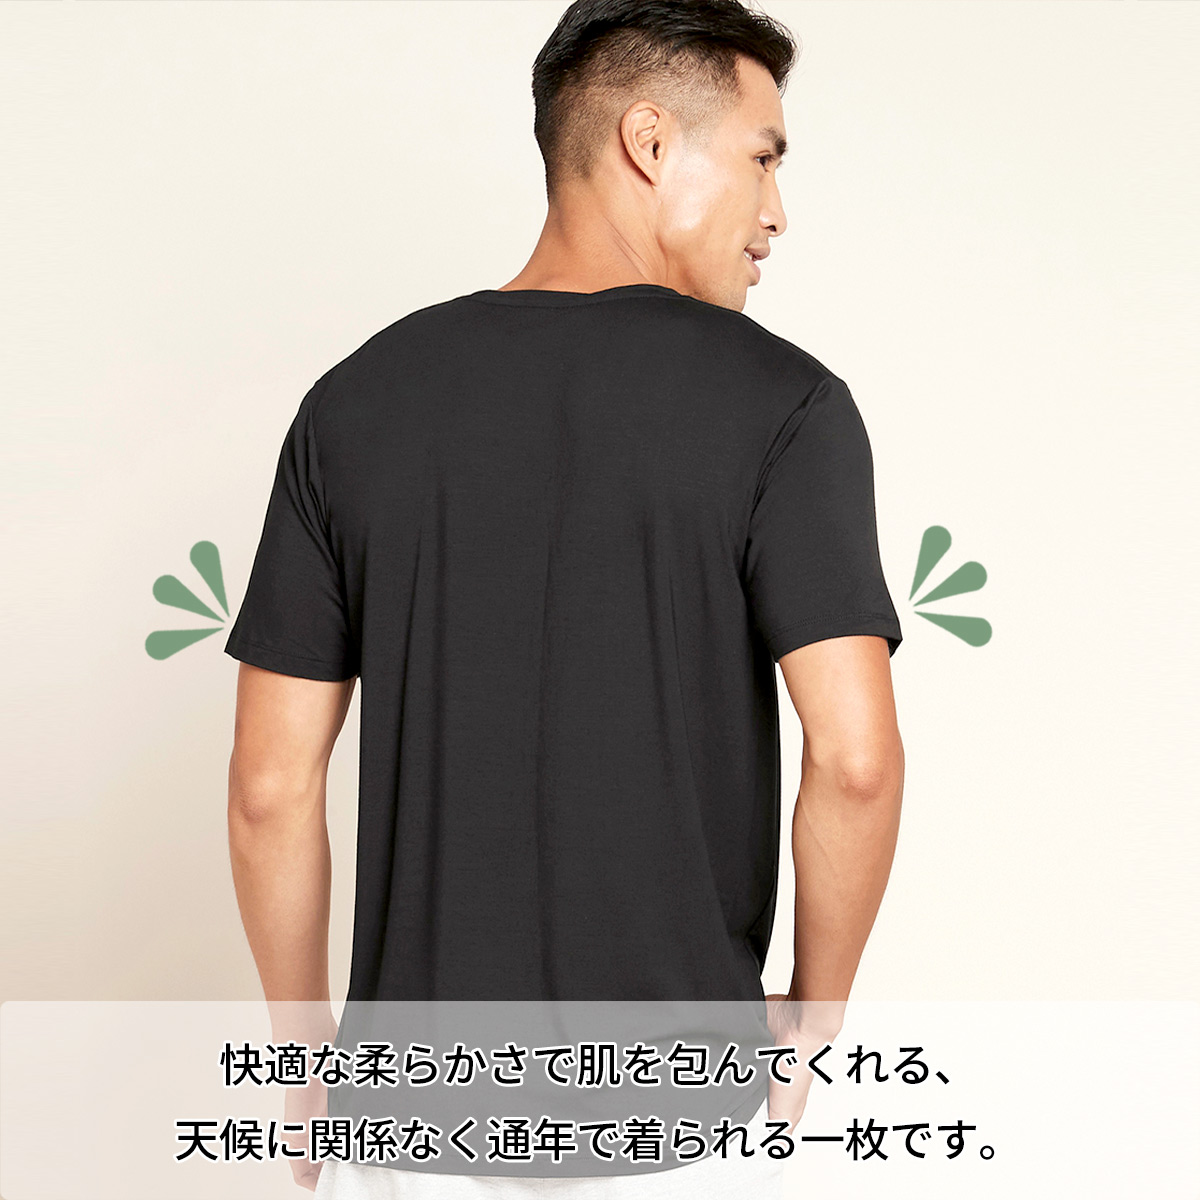 ブーディ Tシャツ メンズクルーネックTシャツ 半袖 トップス 男性 シームレス 竹繊維 インナー 通気性 吸湿性 サスティナブル 送料別